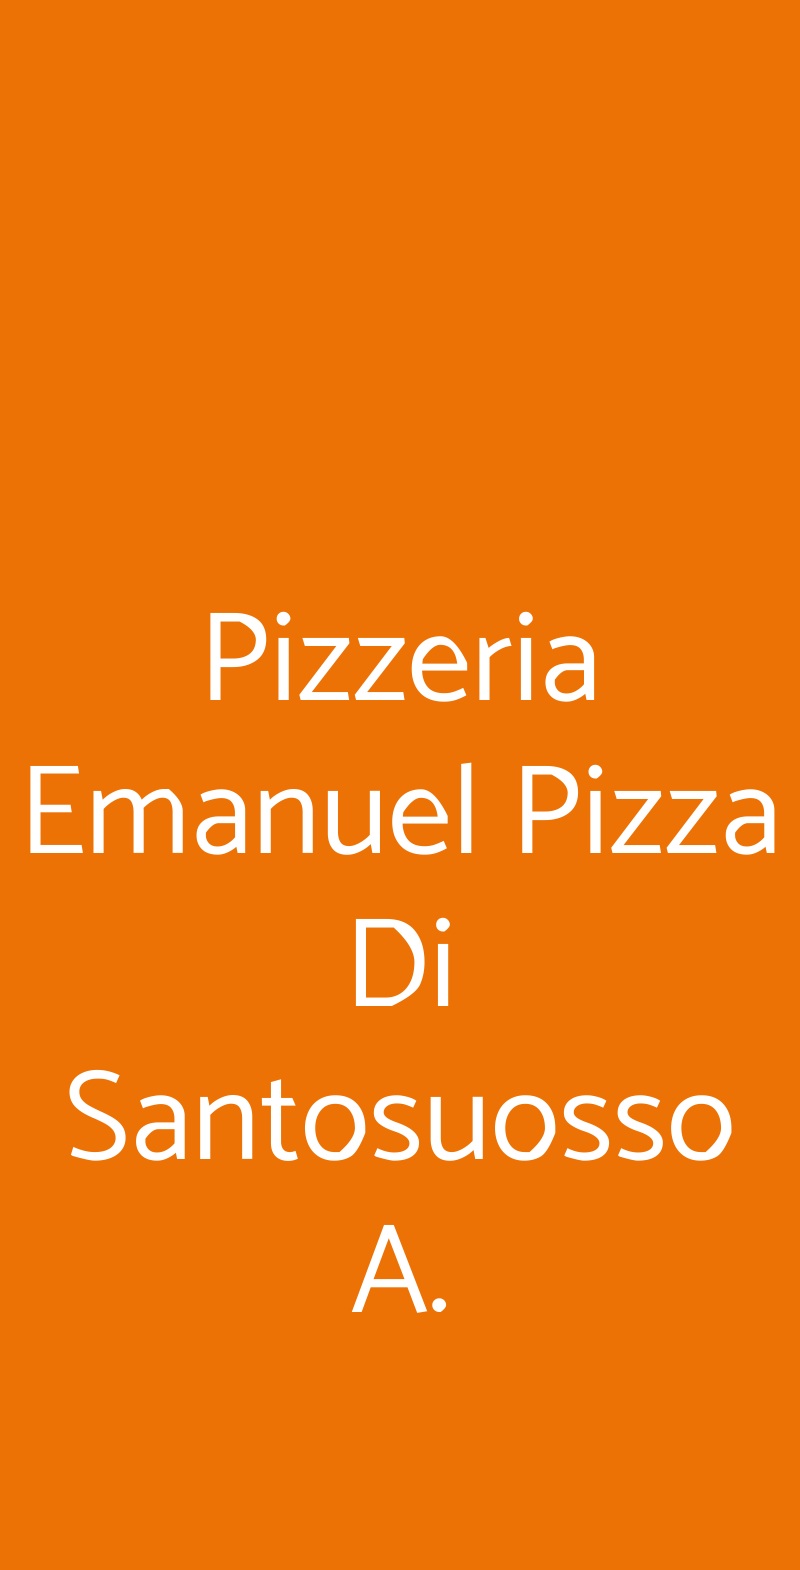 Pizzeria Emanuel Pizza Di Santosuosso A. Livorno menù 1 pagina